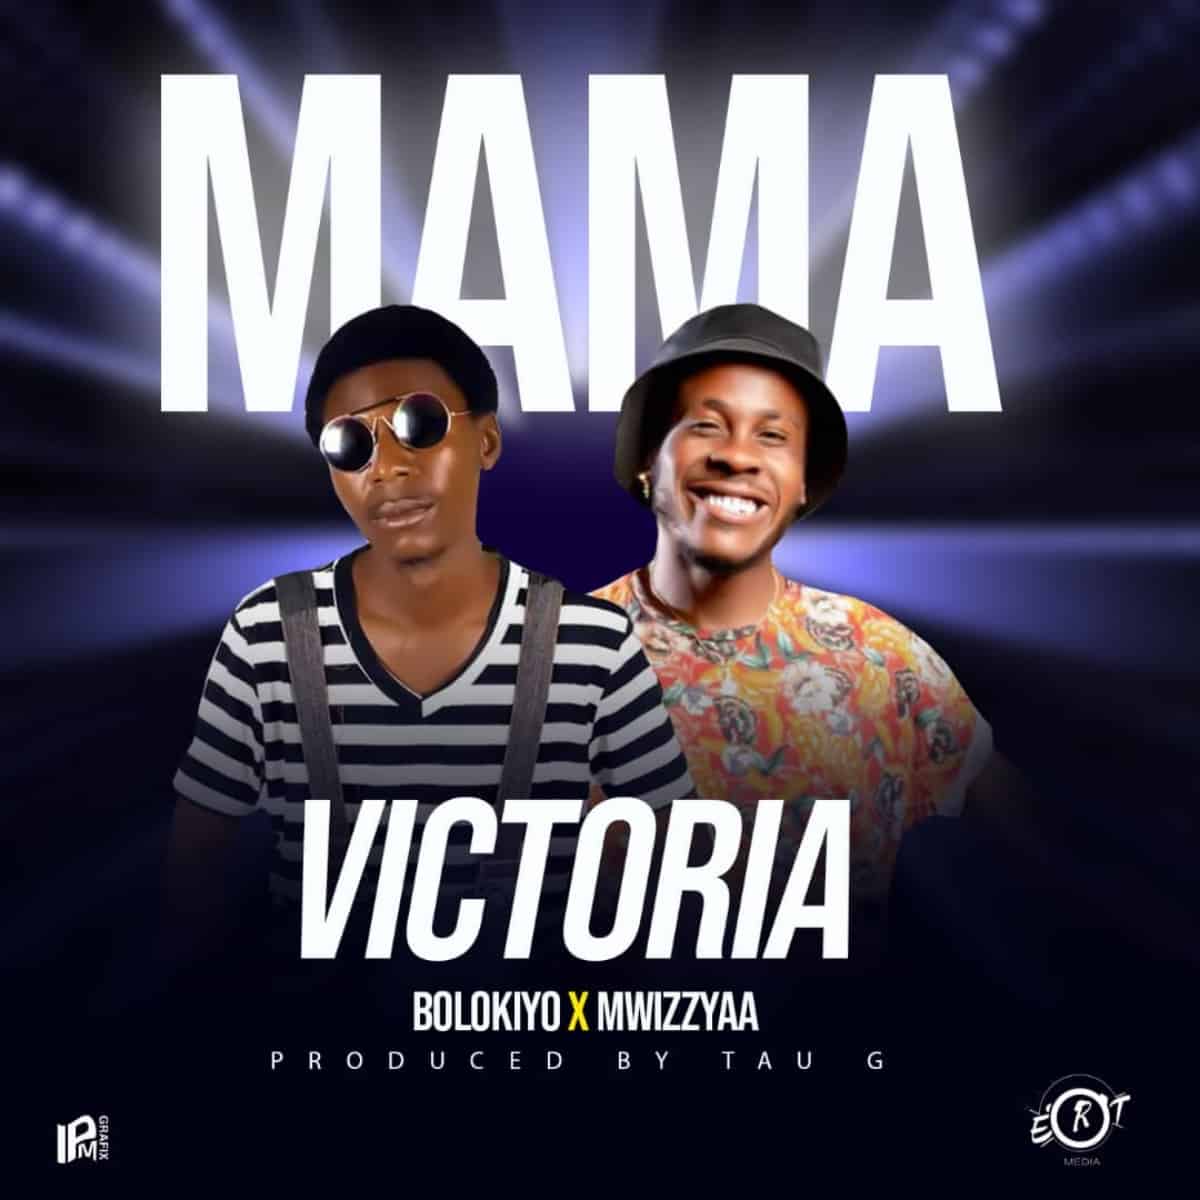 DOWNLOAD: Bolokiyo Ft Mwizya – “Mama Victoria” Mp3